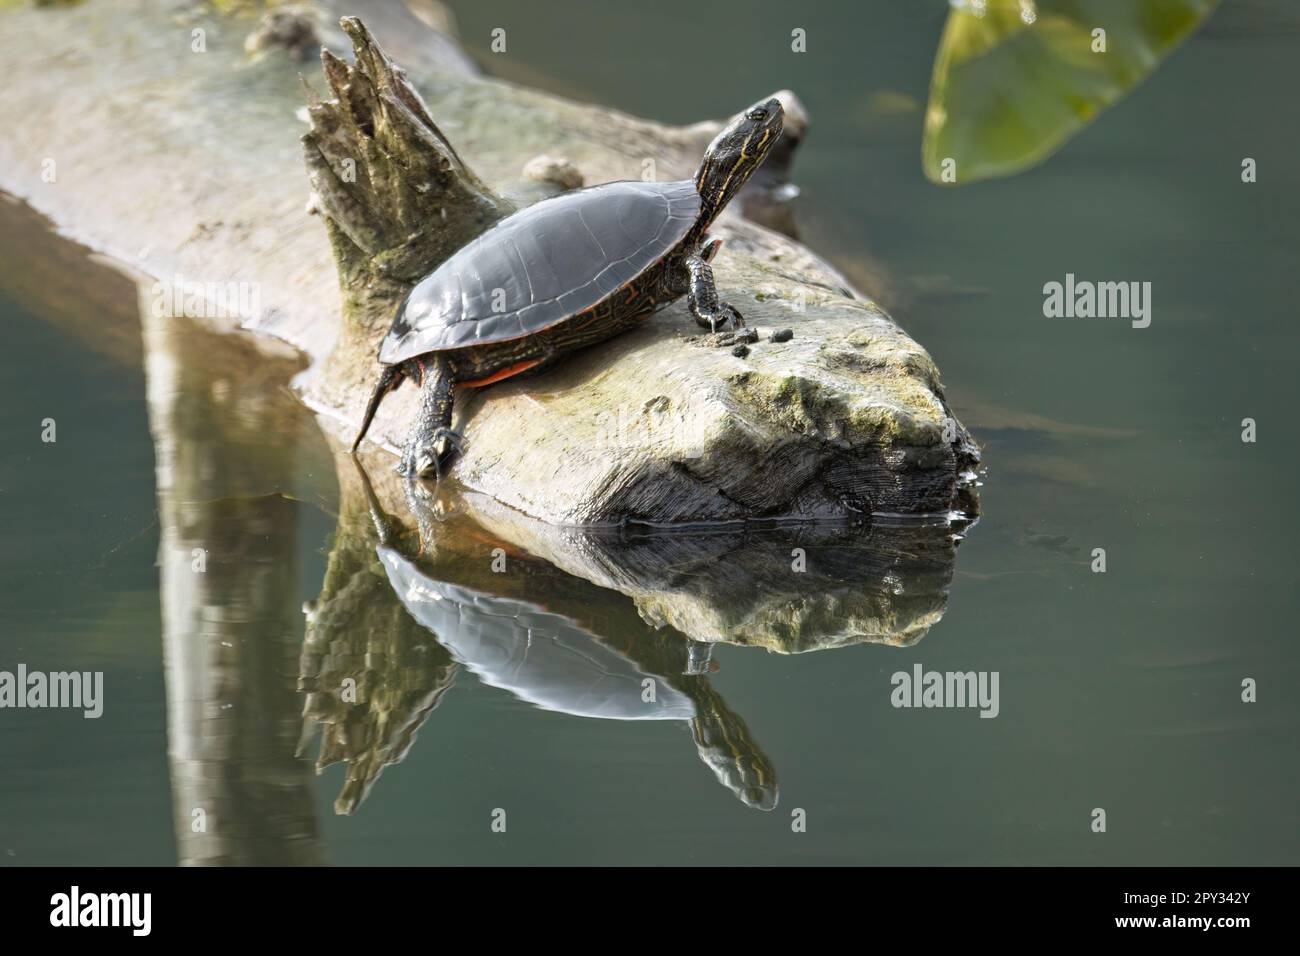 Eine amerikanische bemalte Schildkröte spiegelt sich in ruhigem Wasser, während sie sich auf einem Baumstamm in einem See im Norden Idahos sonnt. Stockfoto